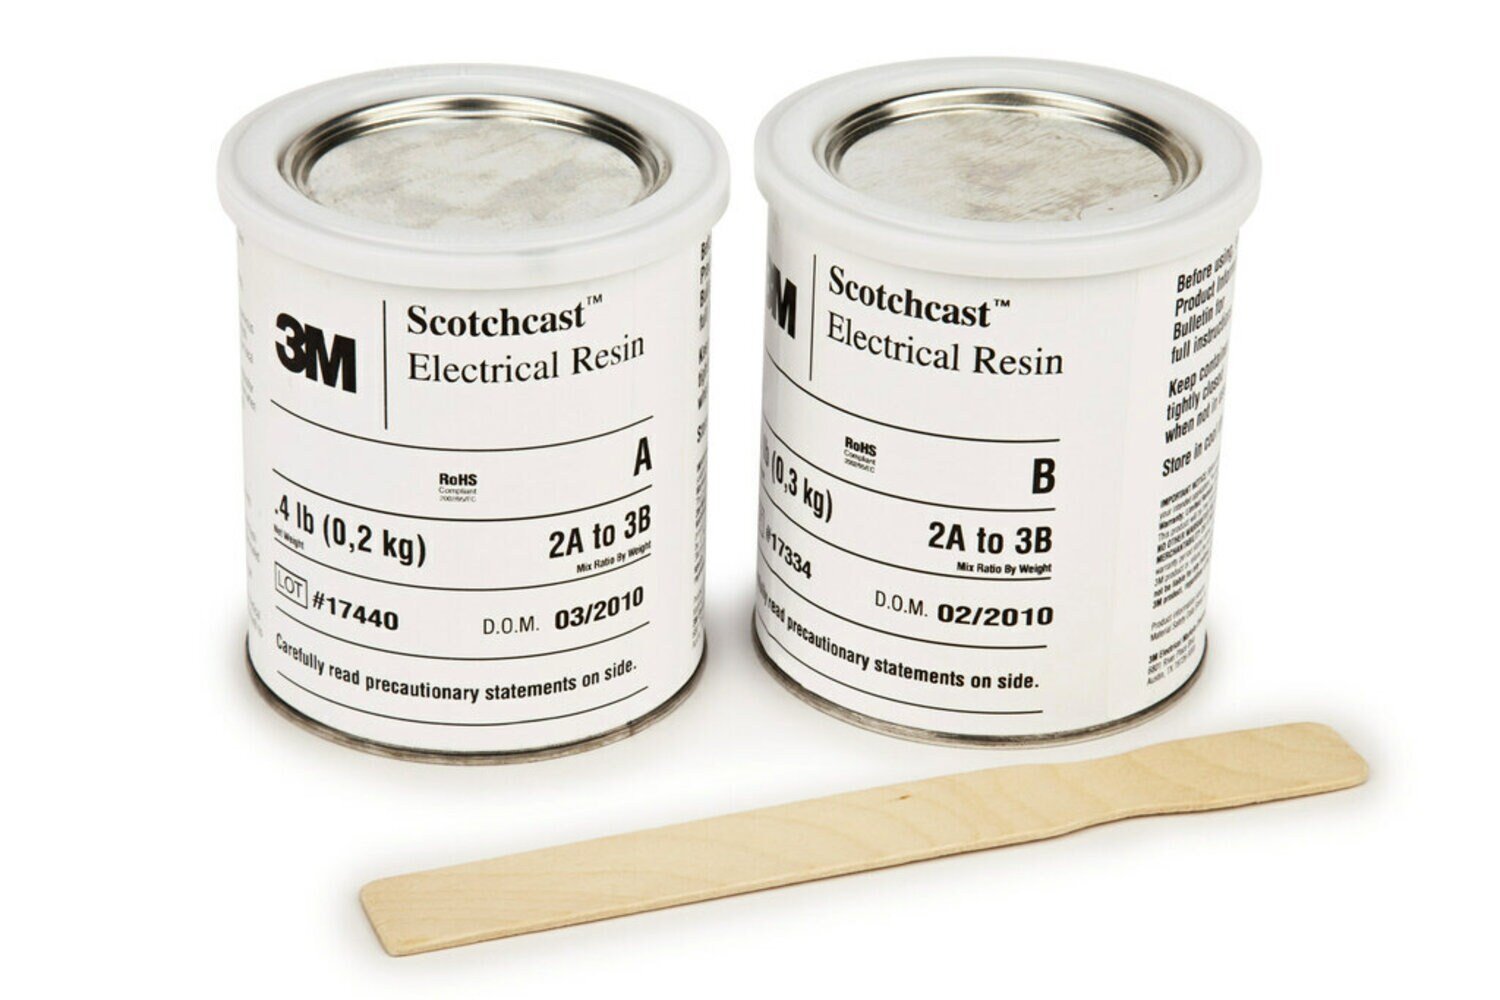 7010293976 - 3M Scotchcast Electrical Resin 250 Part A (40 lb), 1 Drum